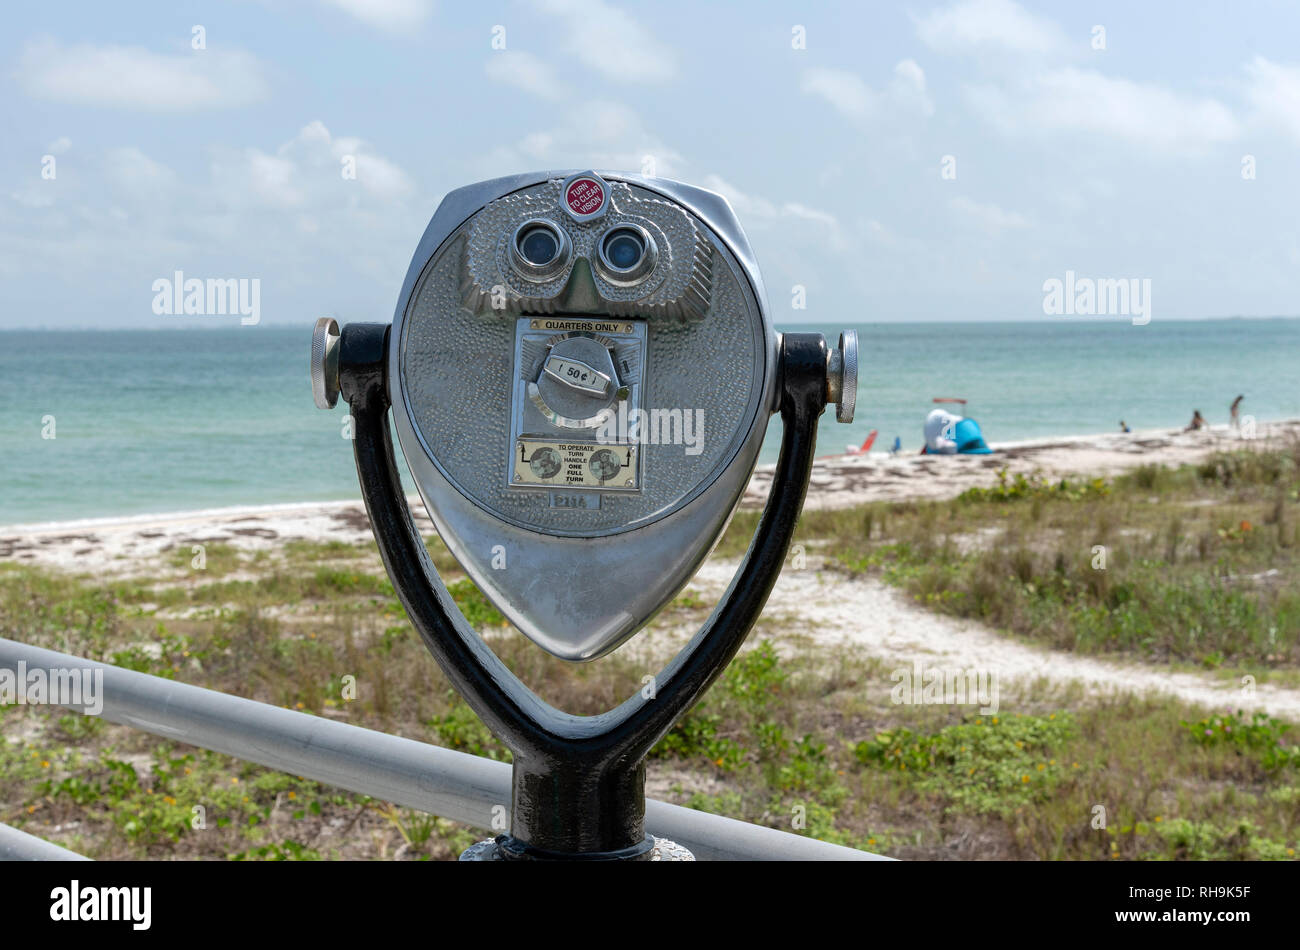 Mullet Key, Fort De Soto Park, Florida, USA. Circa 2018. An orginal set of optical binoculars for public use Stock Photo